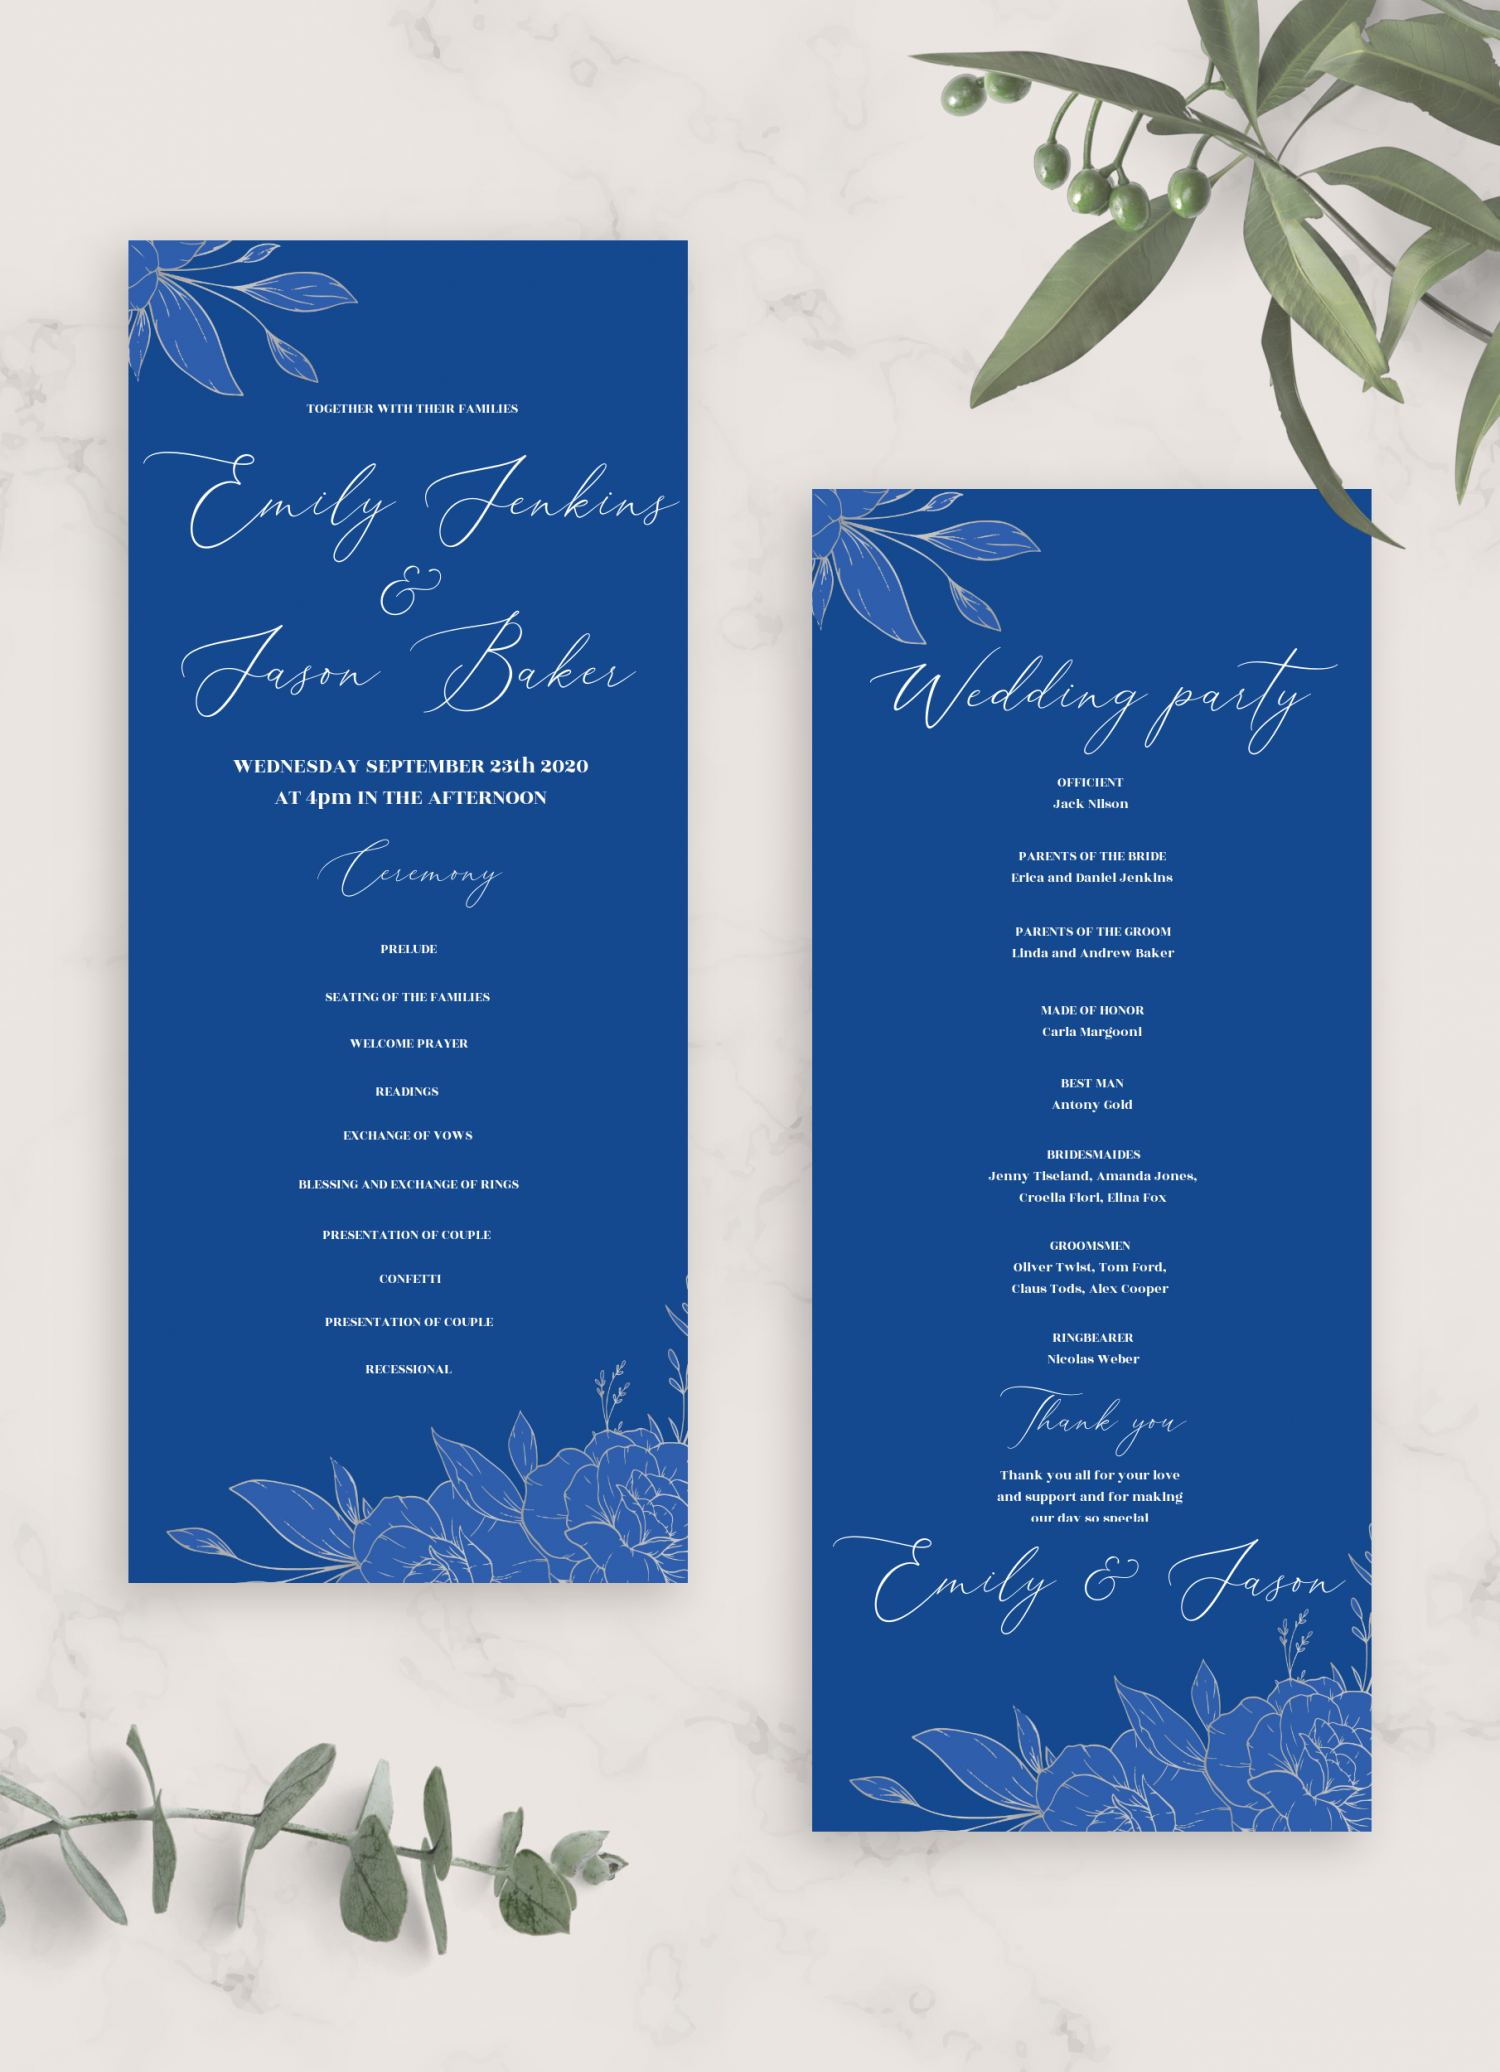 Hãy tải về bộ hoa cưới màu xanh Royal Blue và bộ thiệp cưới màu bạc in sẵn để trải nghiệm sự sang trọng đến từ màu sắc tinh tế và thiết kế đẹp mắt. Hình ảnh sẽ khiến bạn muốn tìm hiểu thêm về bộ sưu tập này và không thể chờ đợi để sử dụng chúng trong ngày trọng đại của mình.